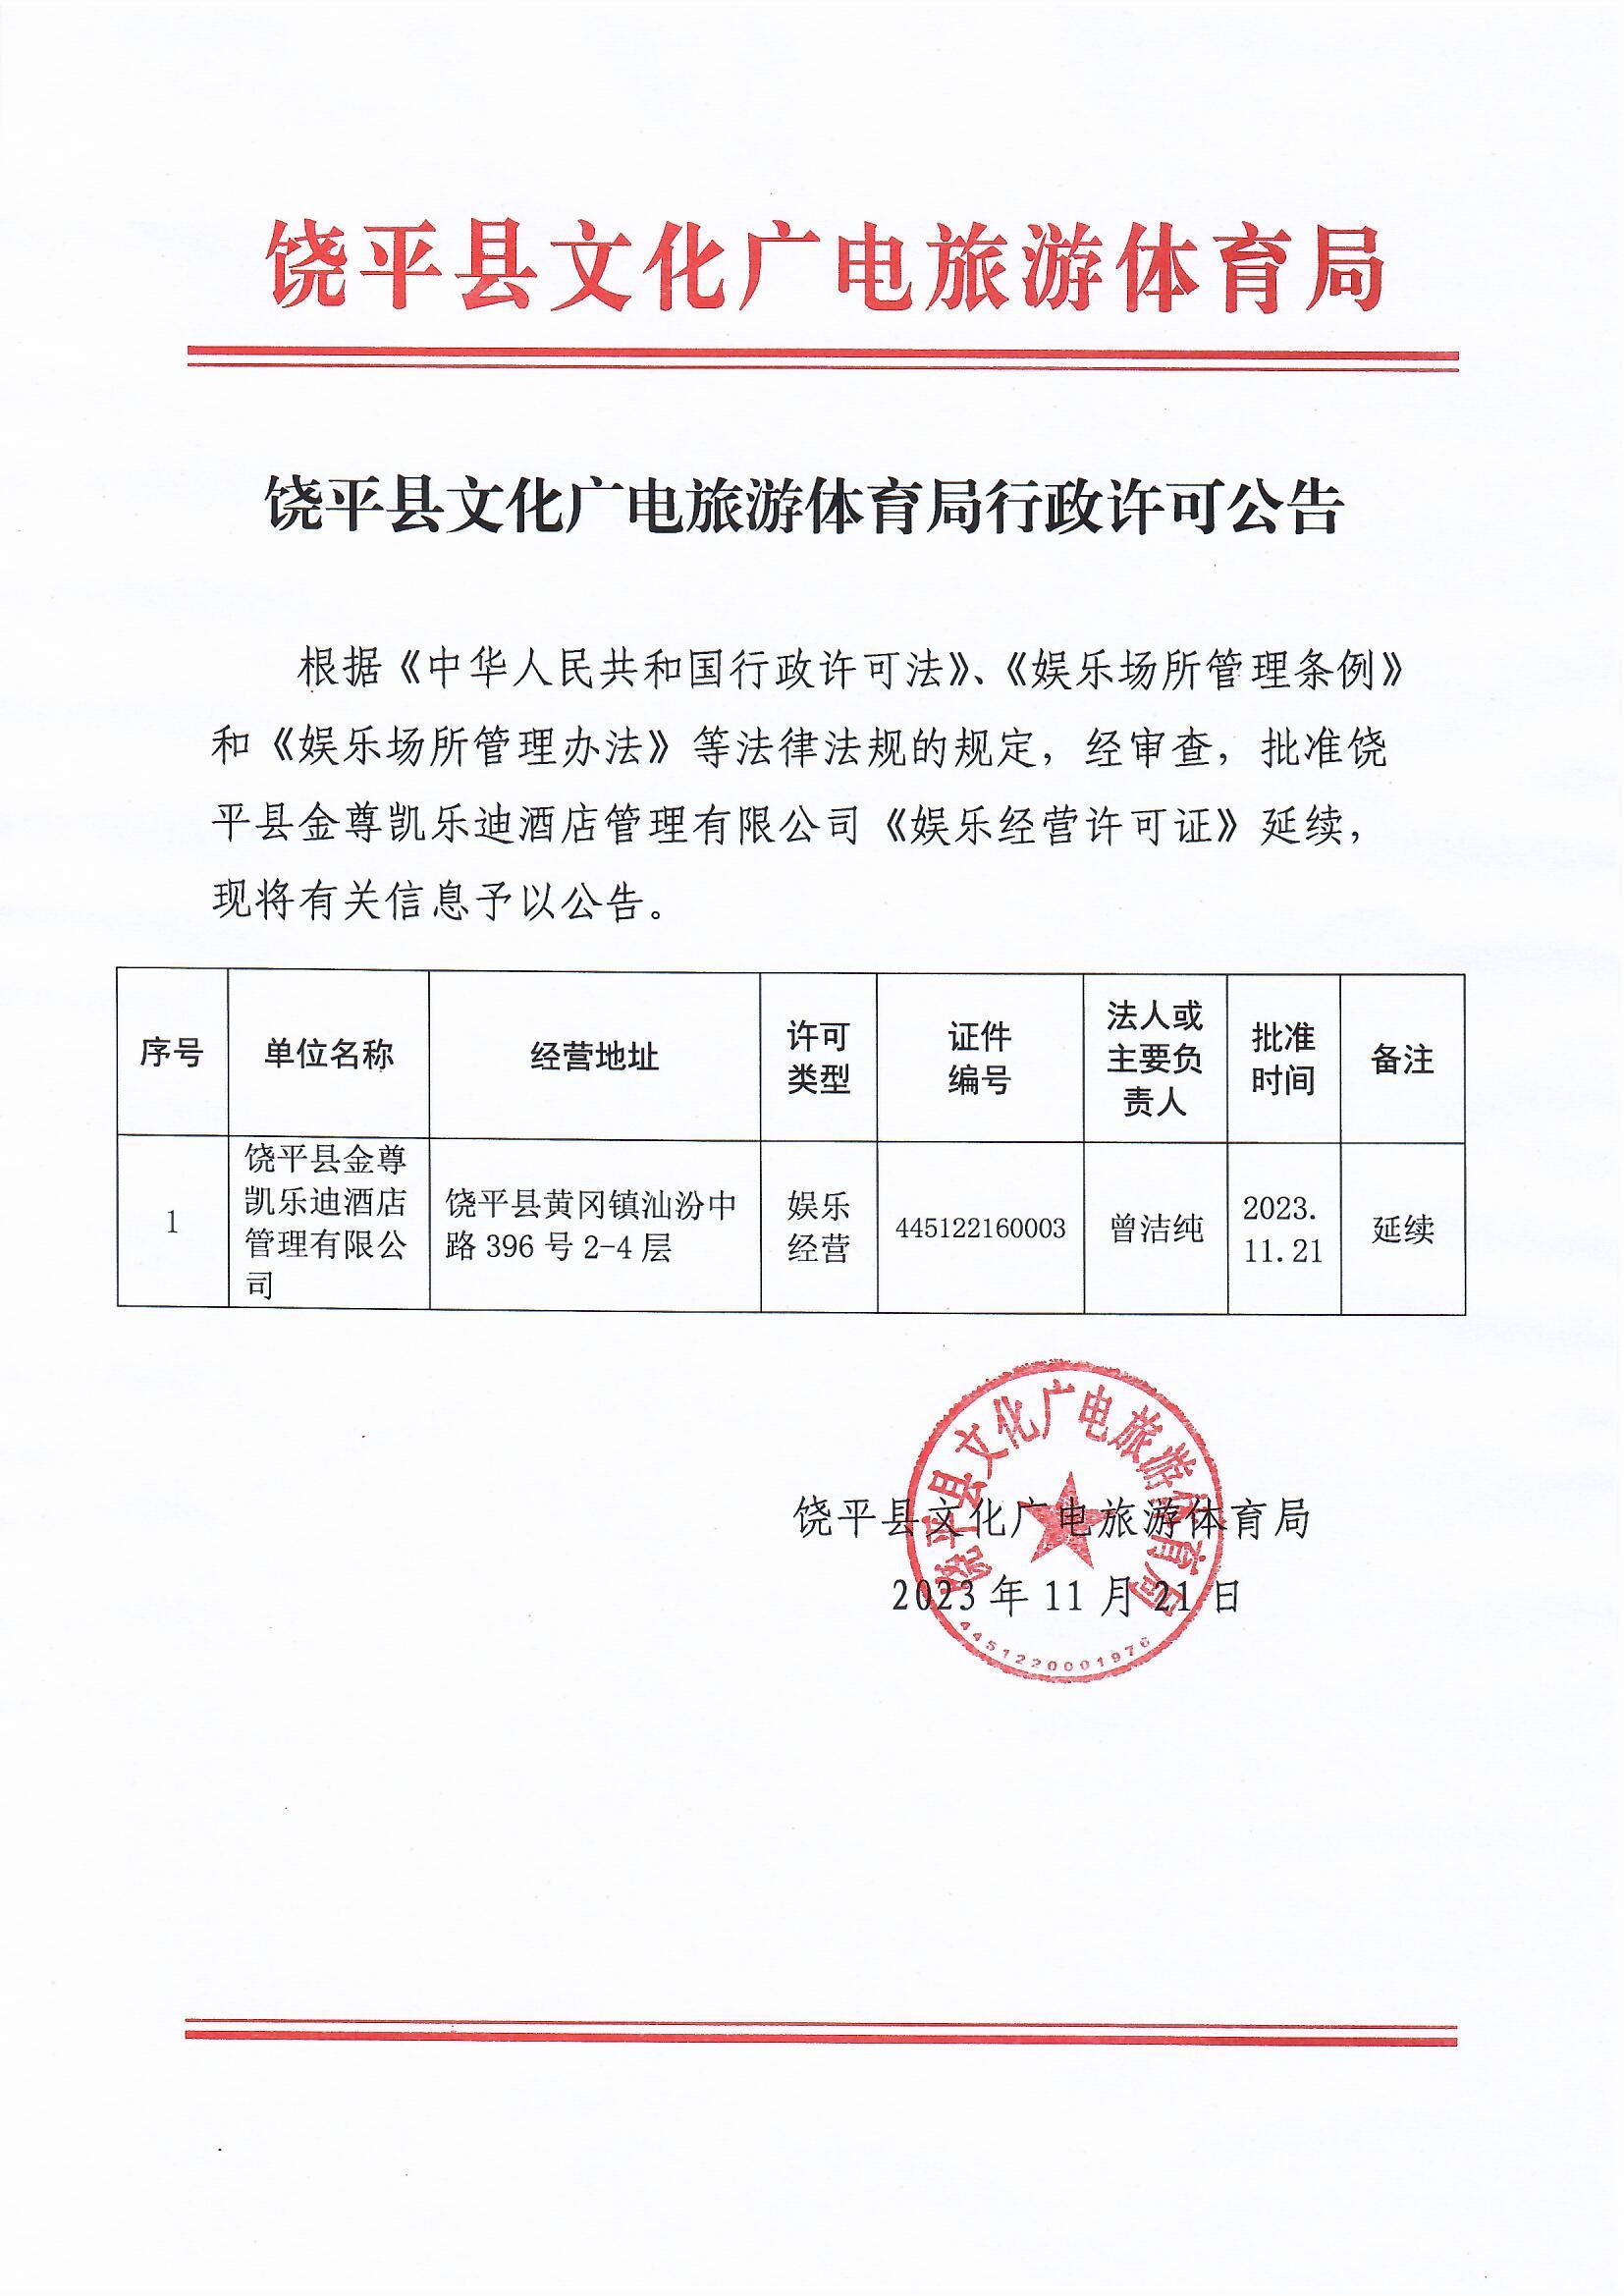 20231121 饶平县文化广电旅游体育局行政许可公告（凯乐迪延续）.jpg